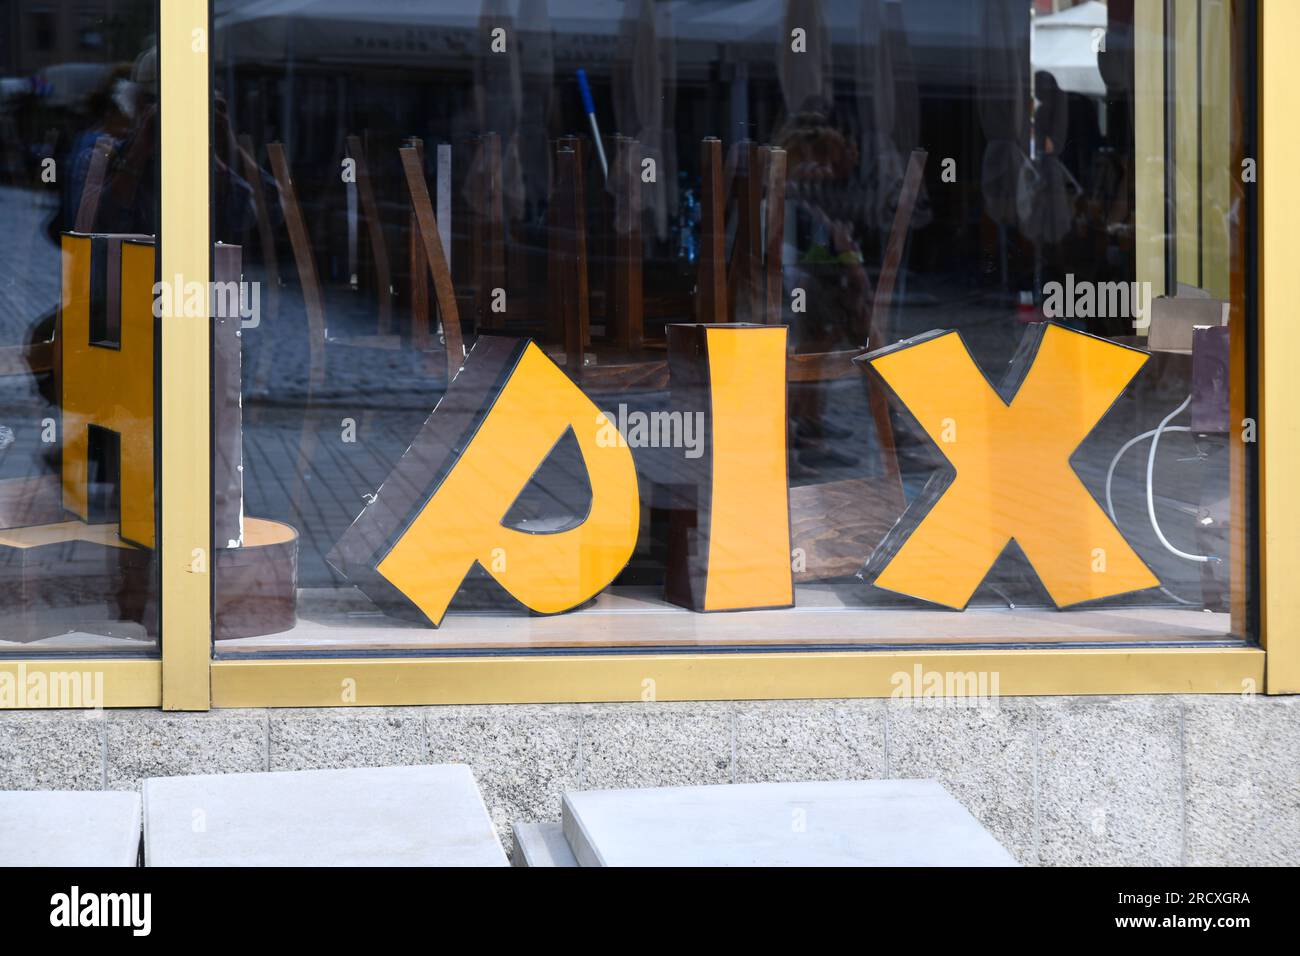 Random letters PIX, in shop window Stock Photo